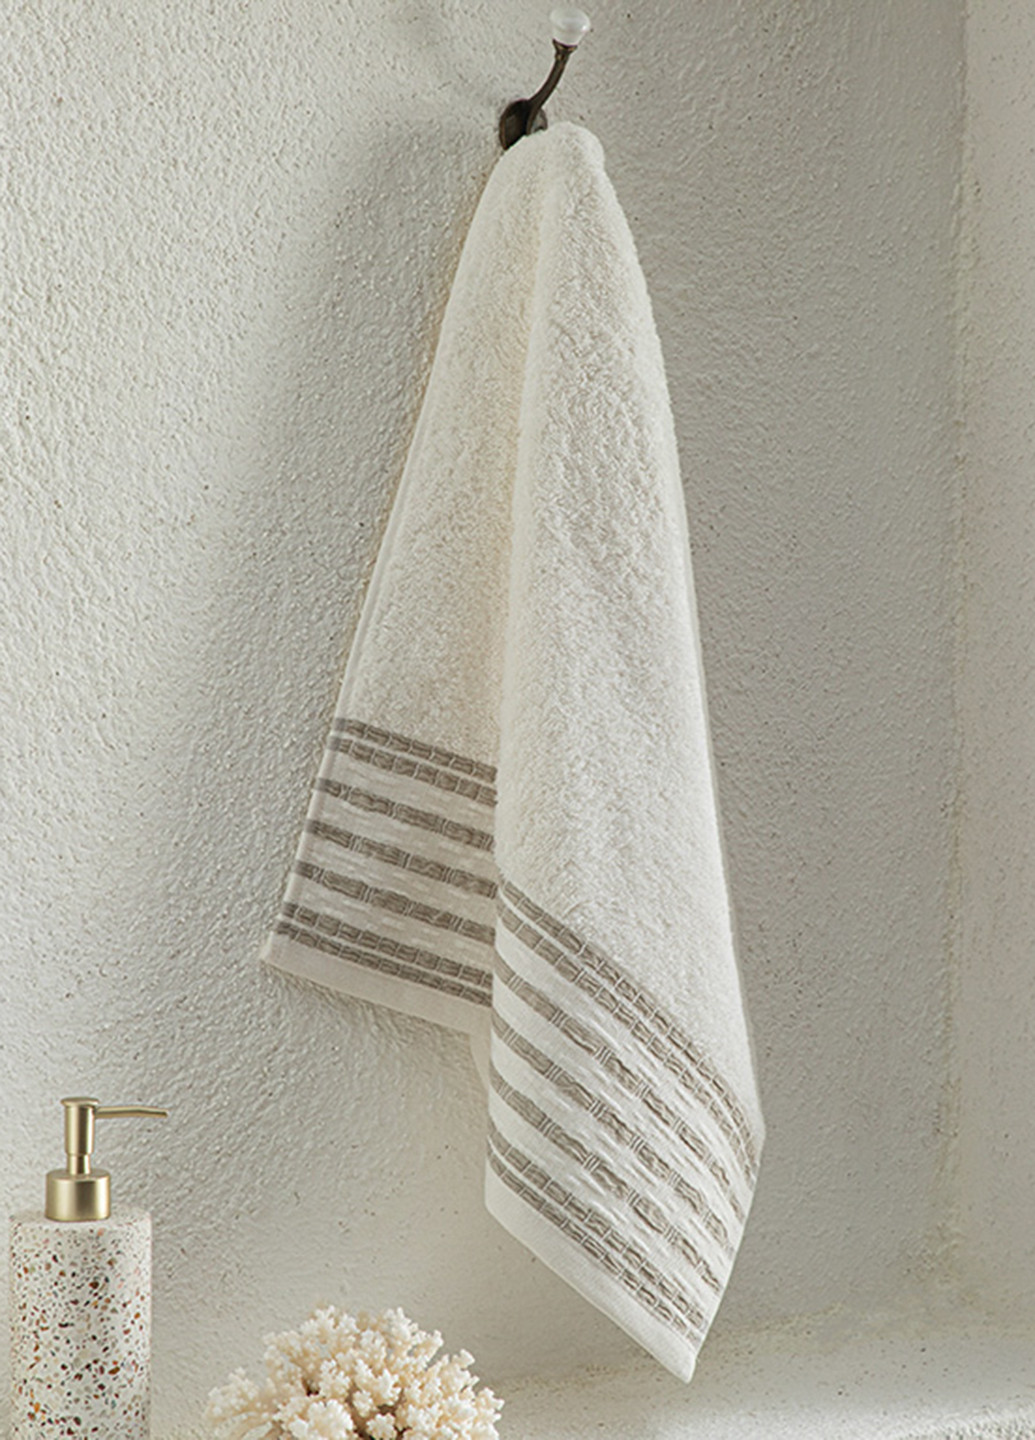 English Home полотенце, 50х70 см полоска бежевый производство - Турция